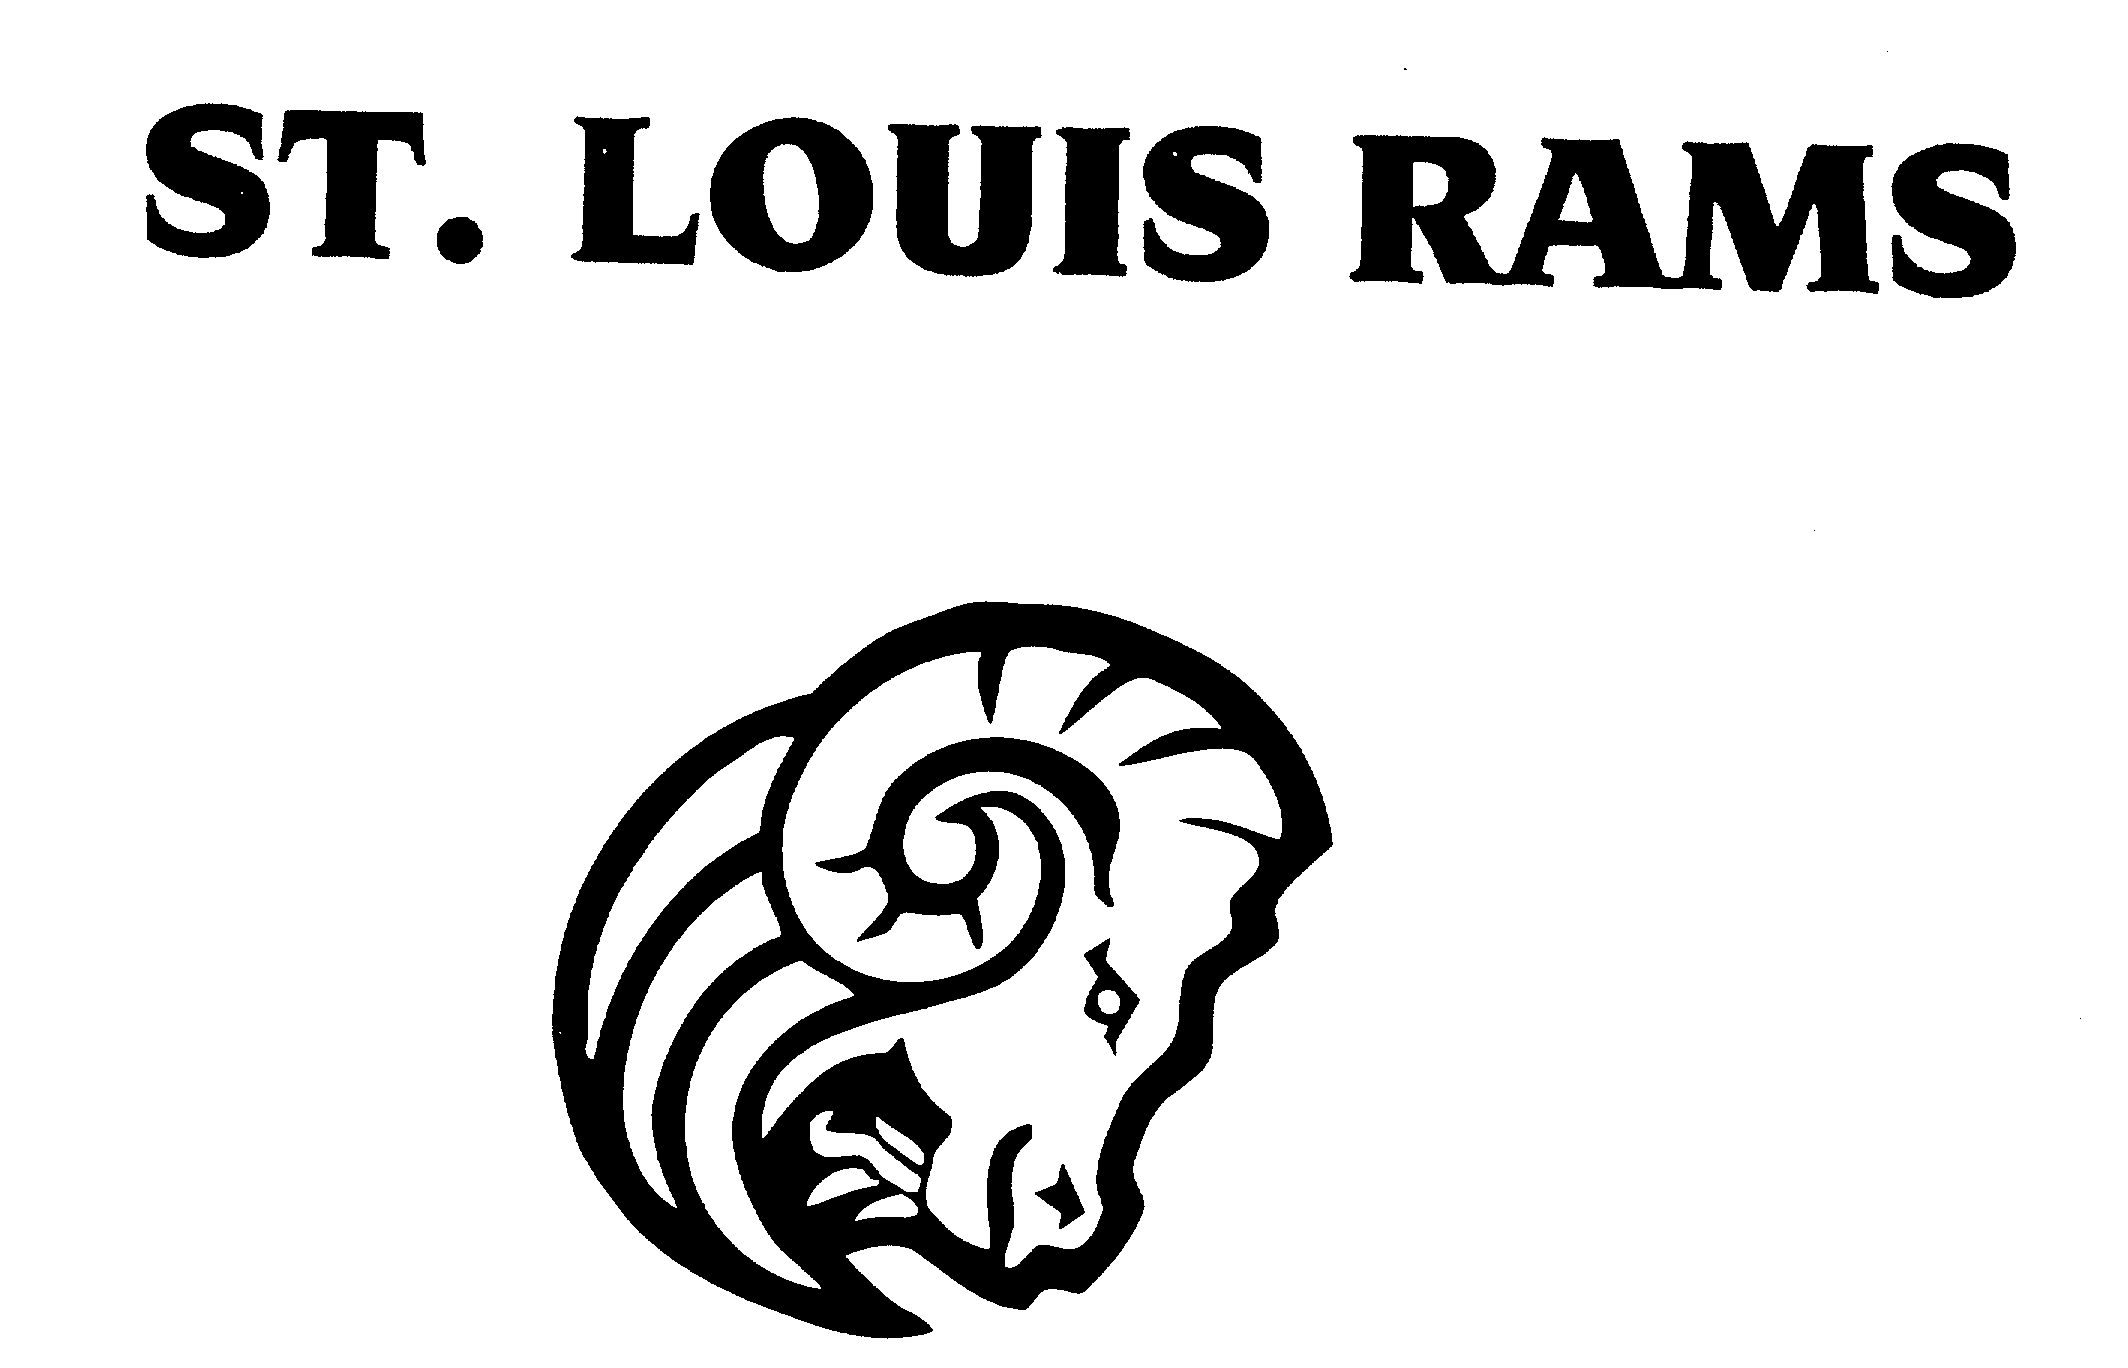 ST. LOUIS RAMS